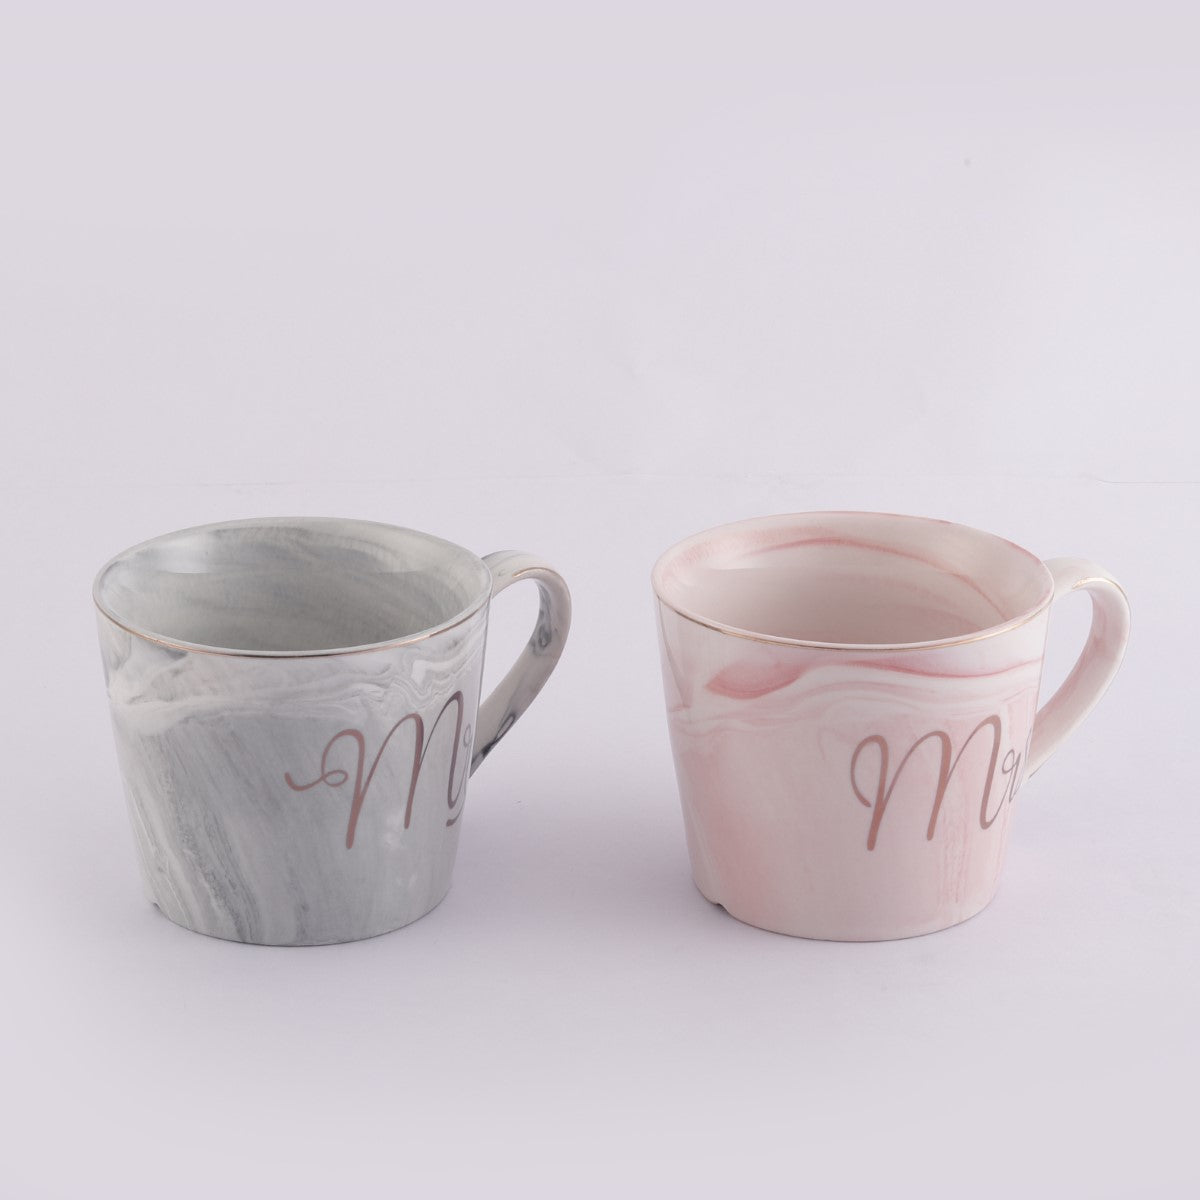 Mr & Mrs Grey & Pink Mugs (Set of 2)